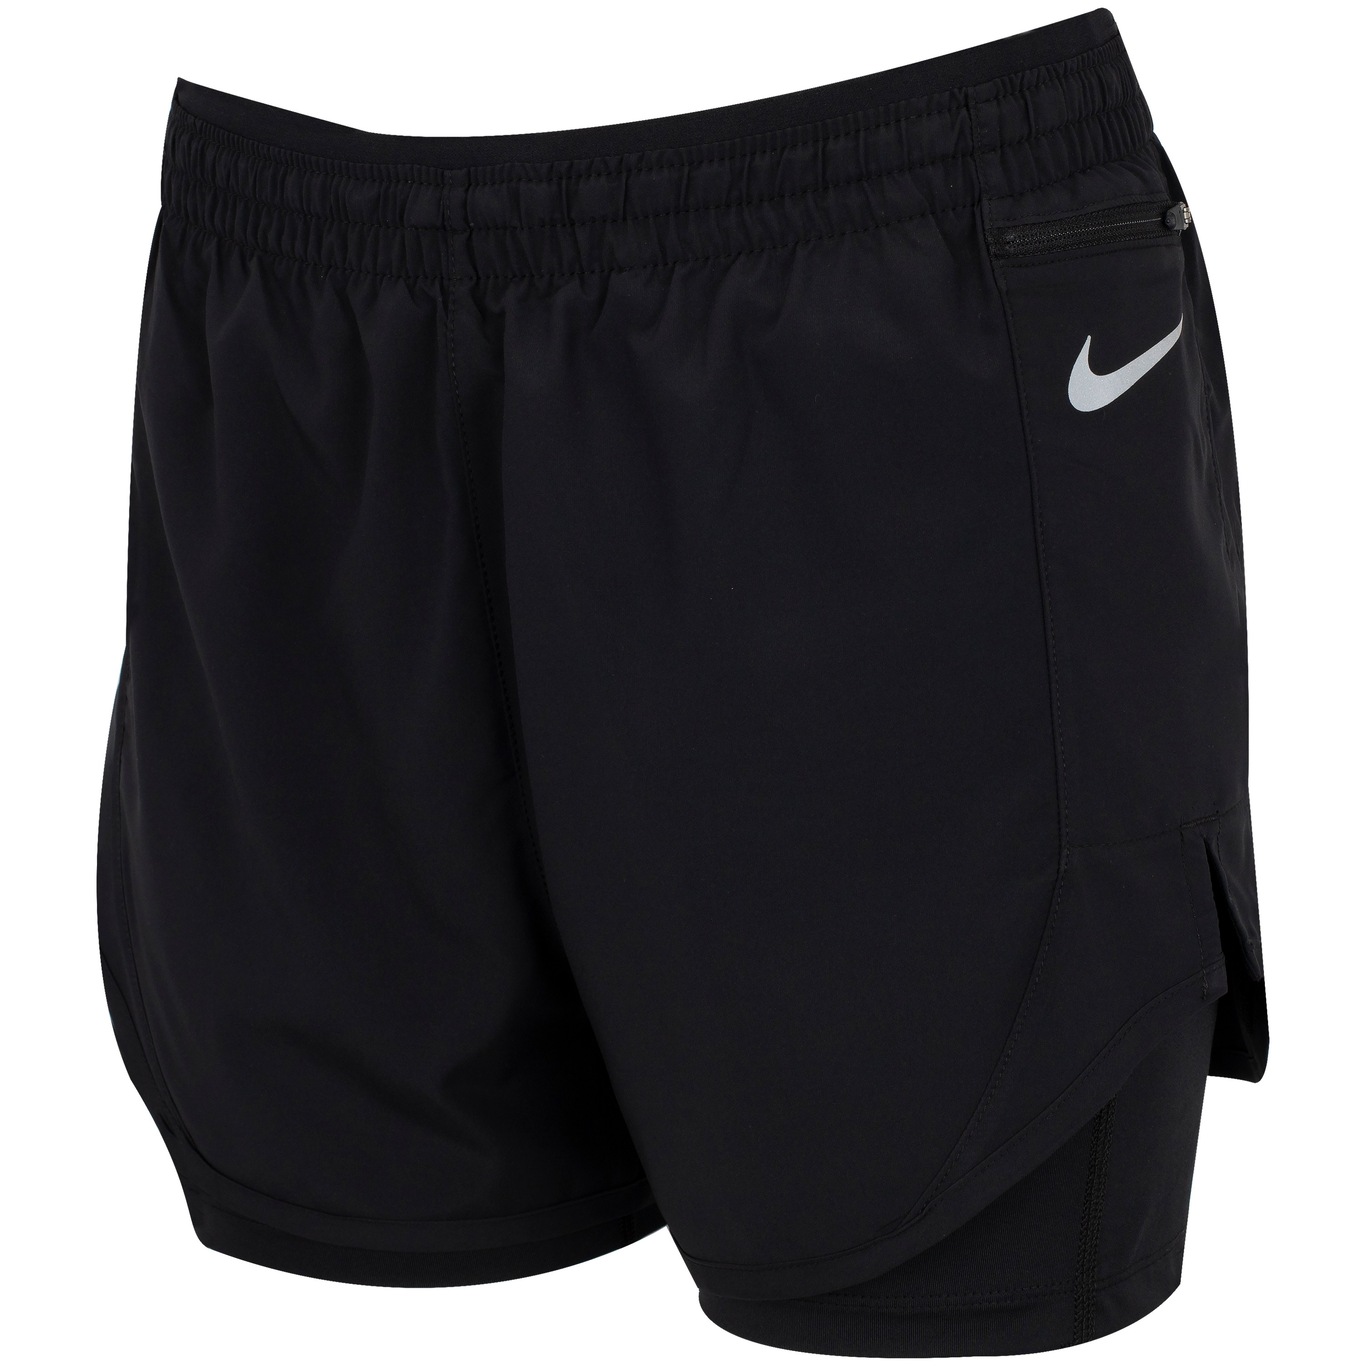 Shorts Nike Epic Luxe - Feminino - Centauro